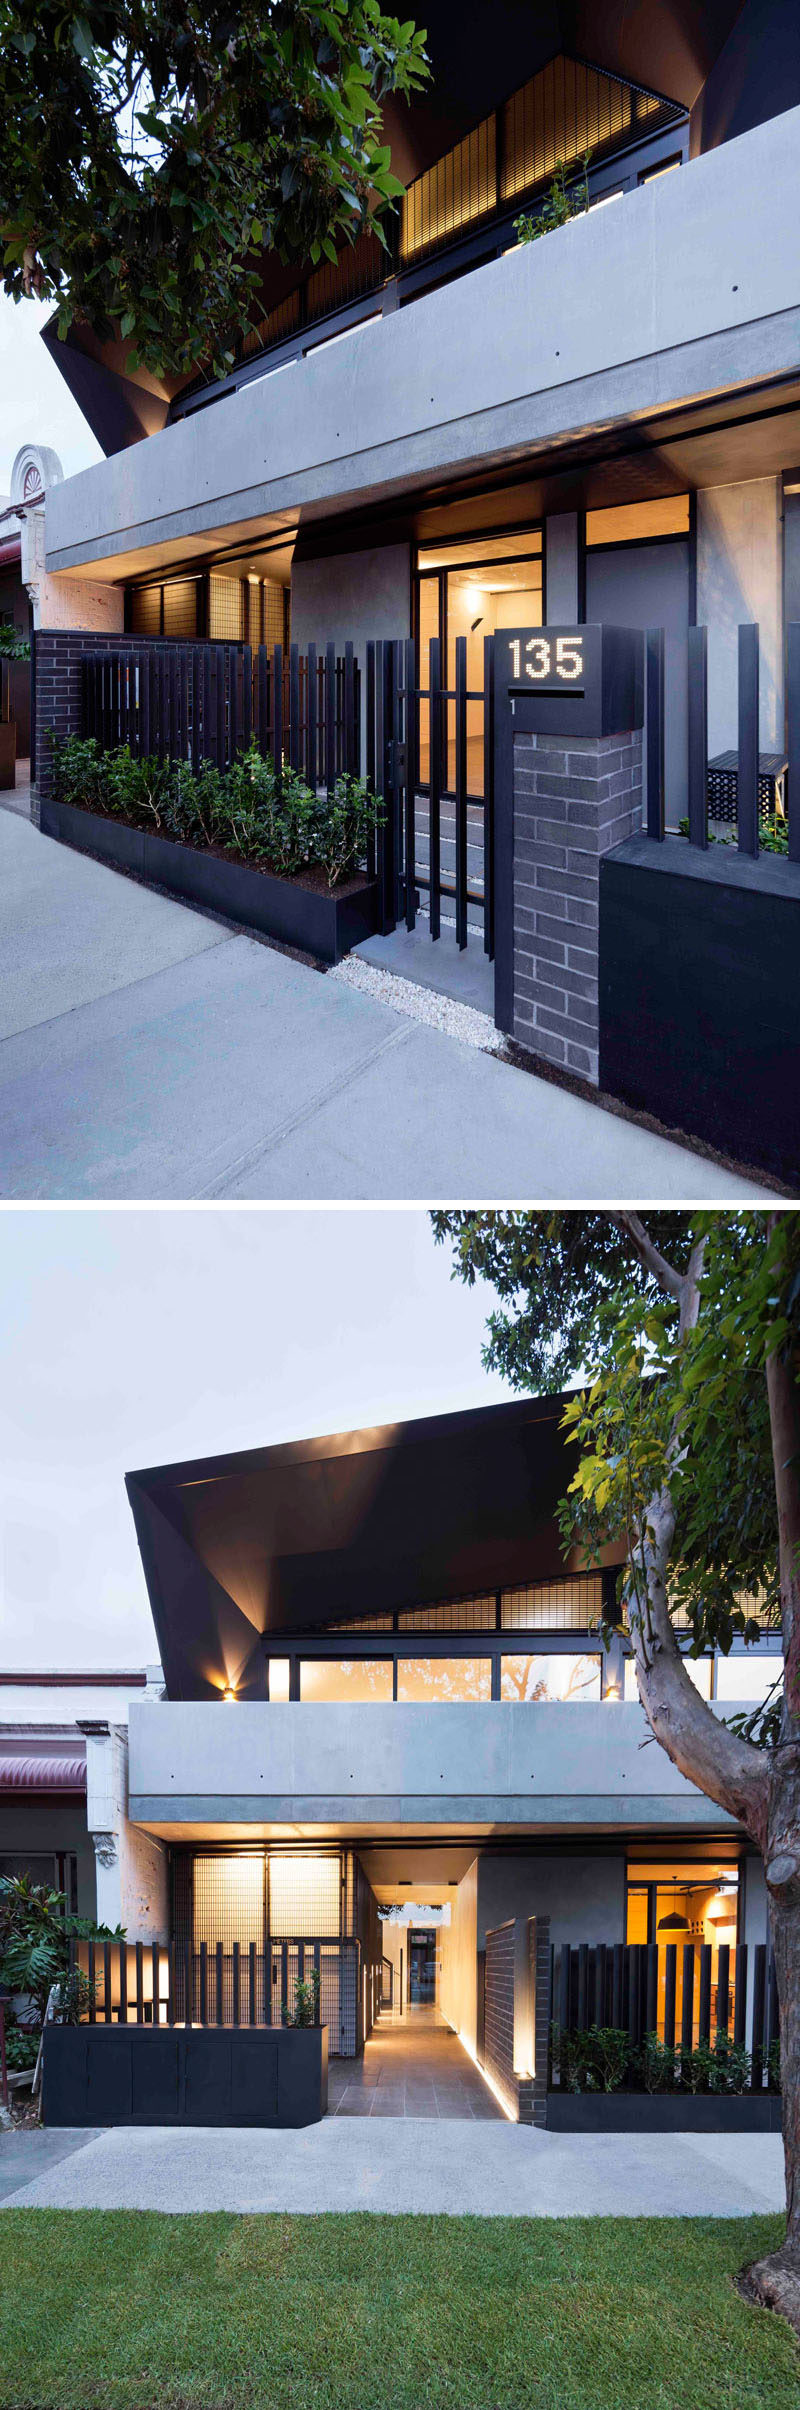 Этот современный многоквартирный дом имеет черный забор за цветочными горшками, которые добавляют нотку зелени к кирпичному и бетонному фасаду 